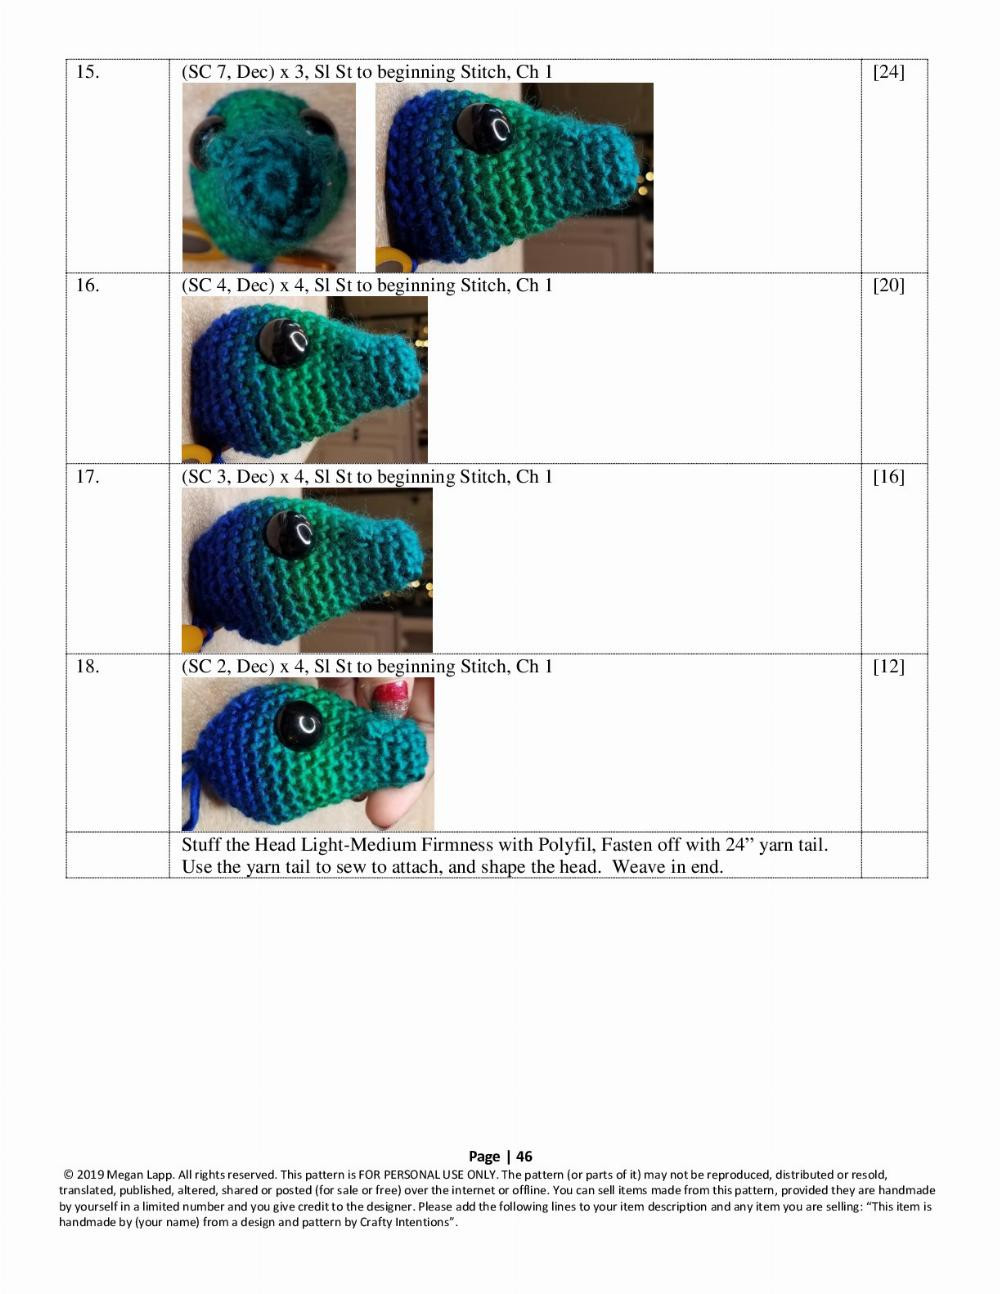 Seahorse crochet pattern